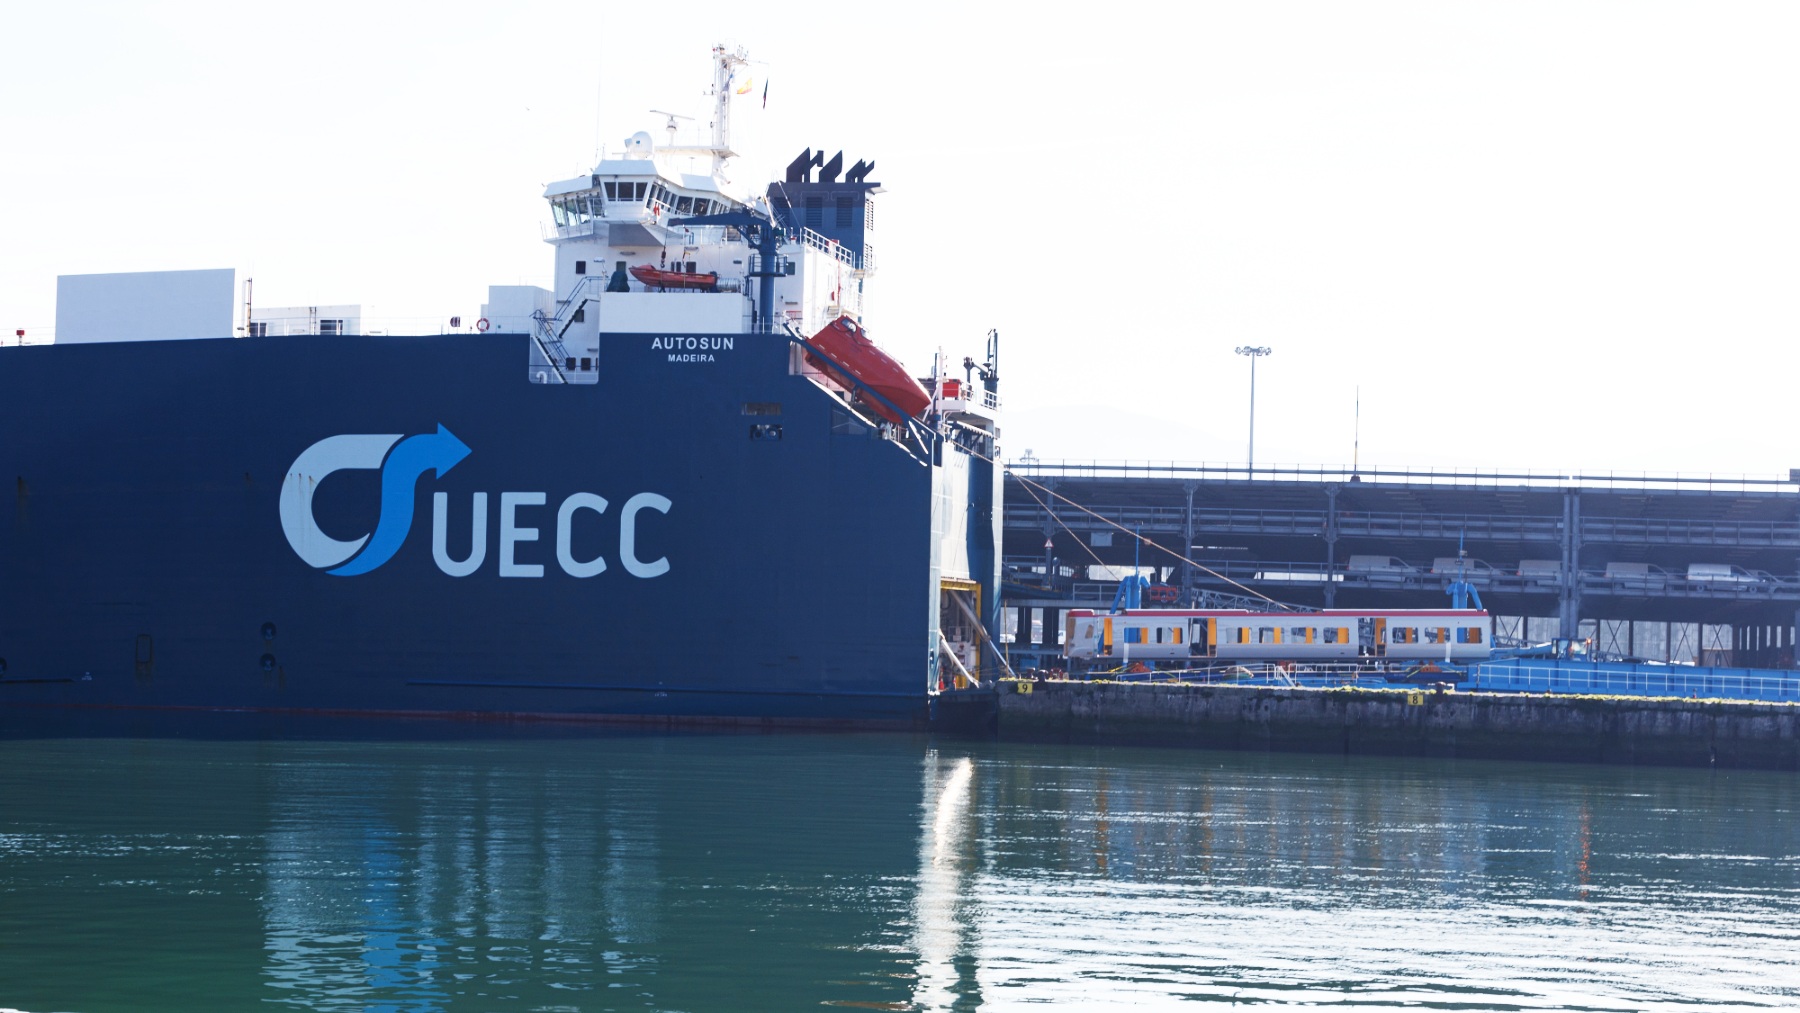 ■	La naviera UECC será la primera empresa en beneficiarse del nuevo punto de suministro eléctrico para reducir el impacto medioambiental y acústico